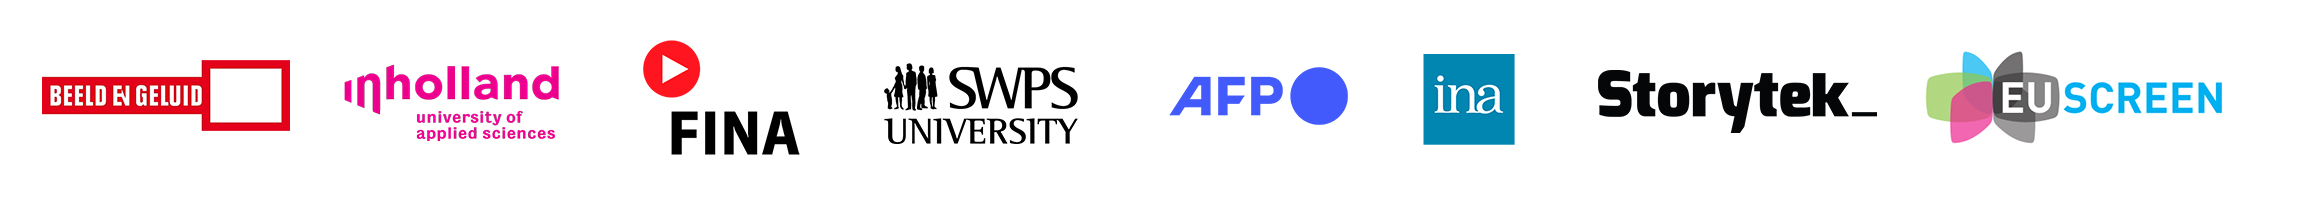 logotypy media mumeric en v2